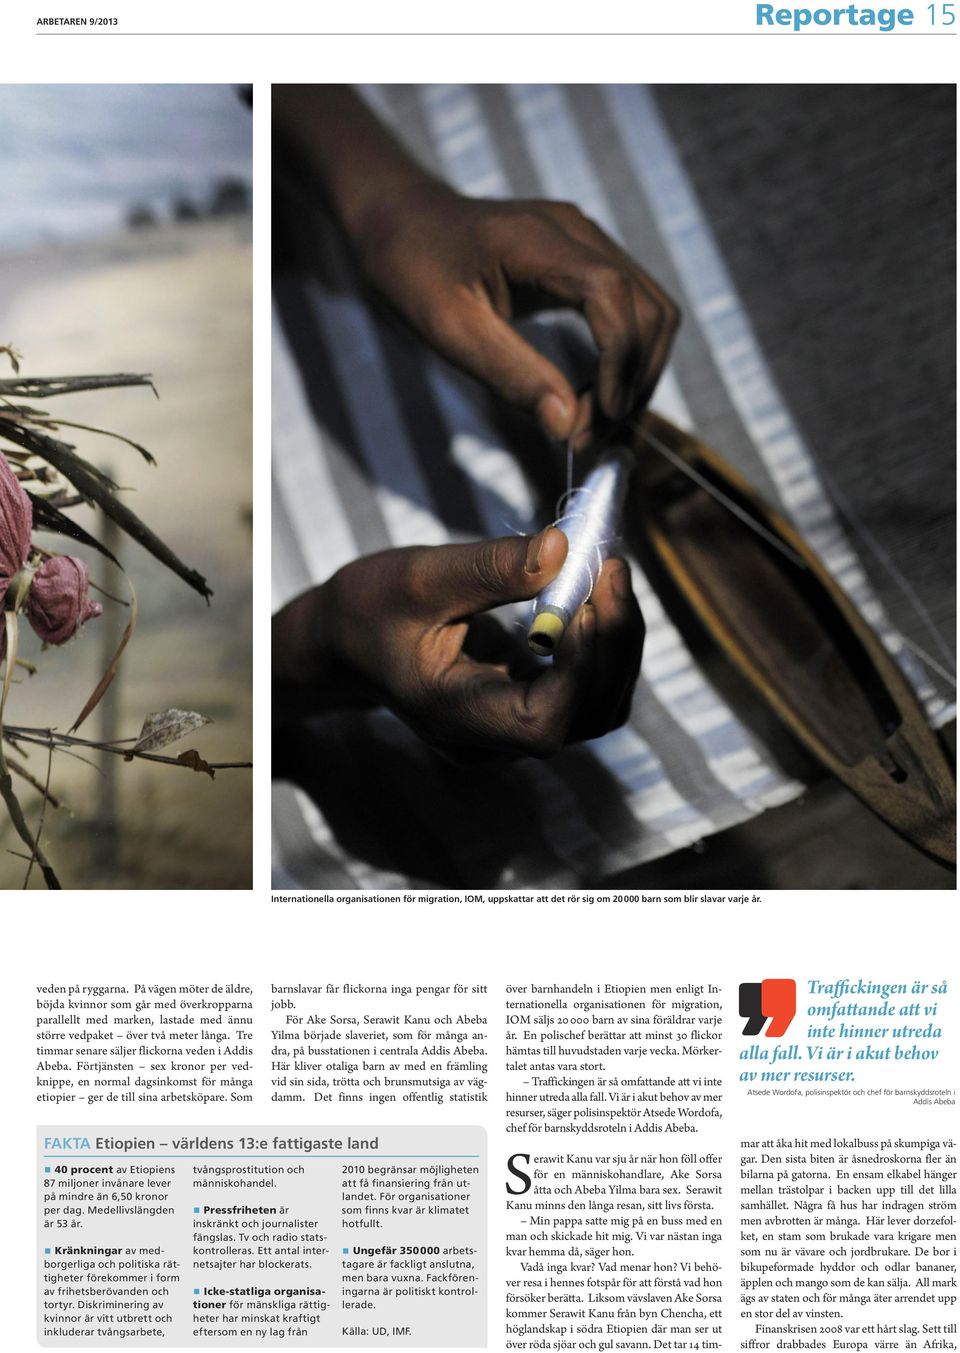 Förtjänsten sex kronor per vedknippe, en normal dagsinkomst för många etiopier ger de till sina arbetsköpare.